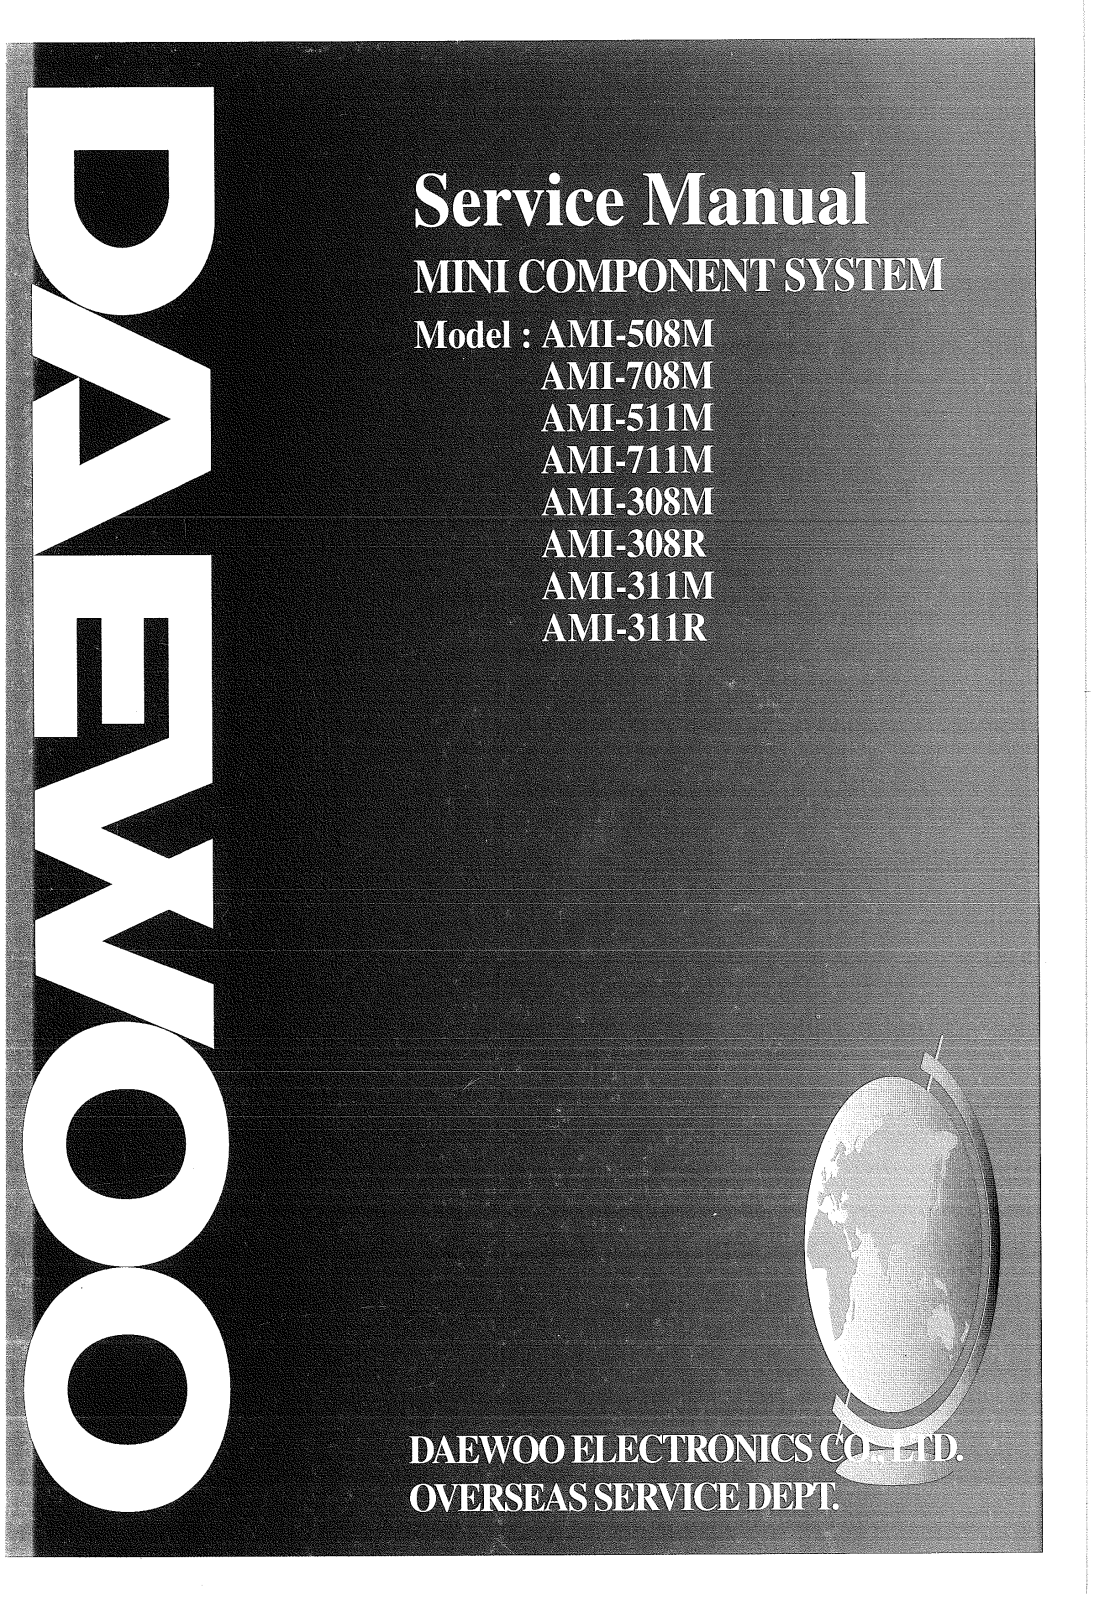 DAEWOO AMI-508M, AMI-708M, AMI-511M, AMI-711M, AMI-308M Service Manual